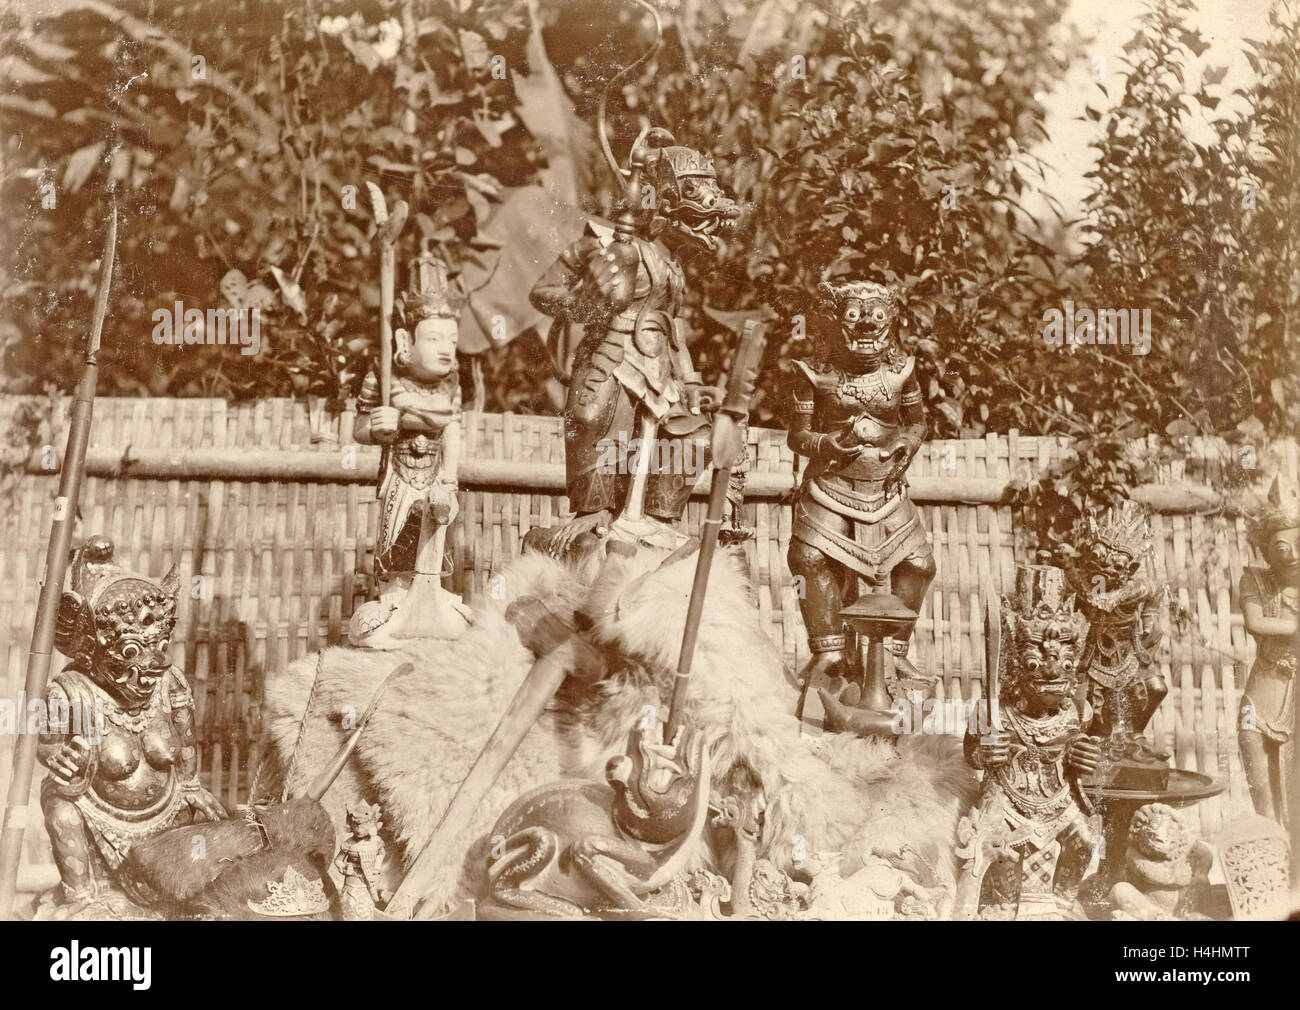 Gruppe von hölzernen Skulpturen unter freiem Himmel in Niederländisch-Indien, Indonesien, anonym, c. 1895 - um 1905 Stockfoto